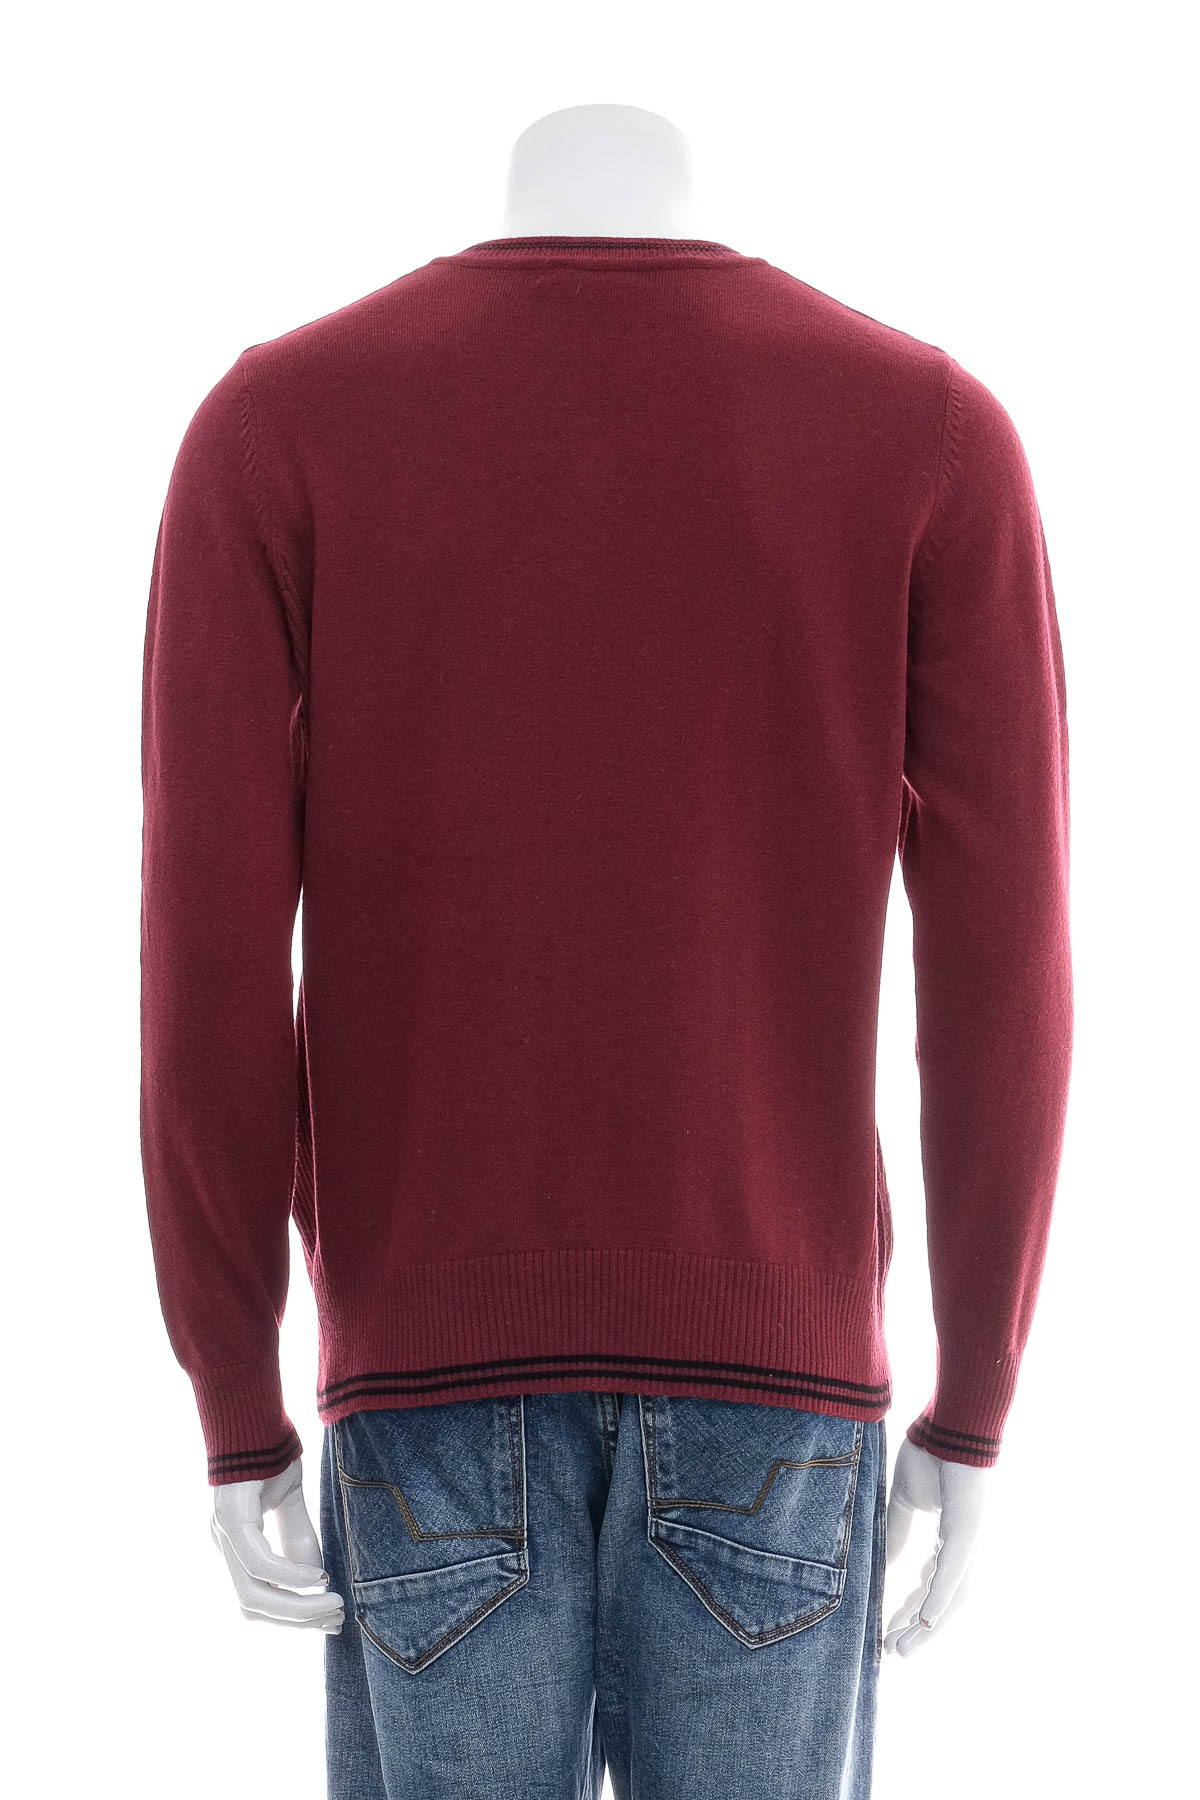 Men's sweater - HANG TEN - 1